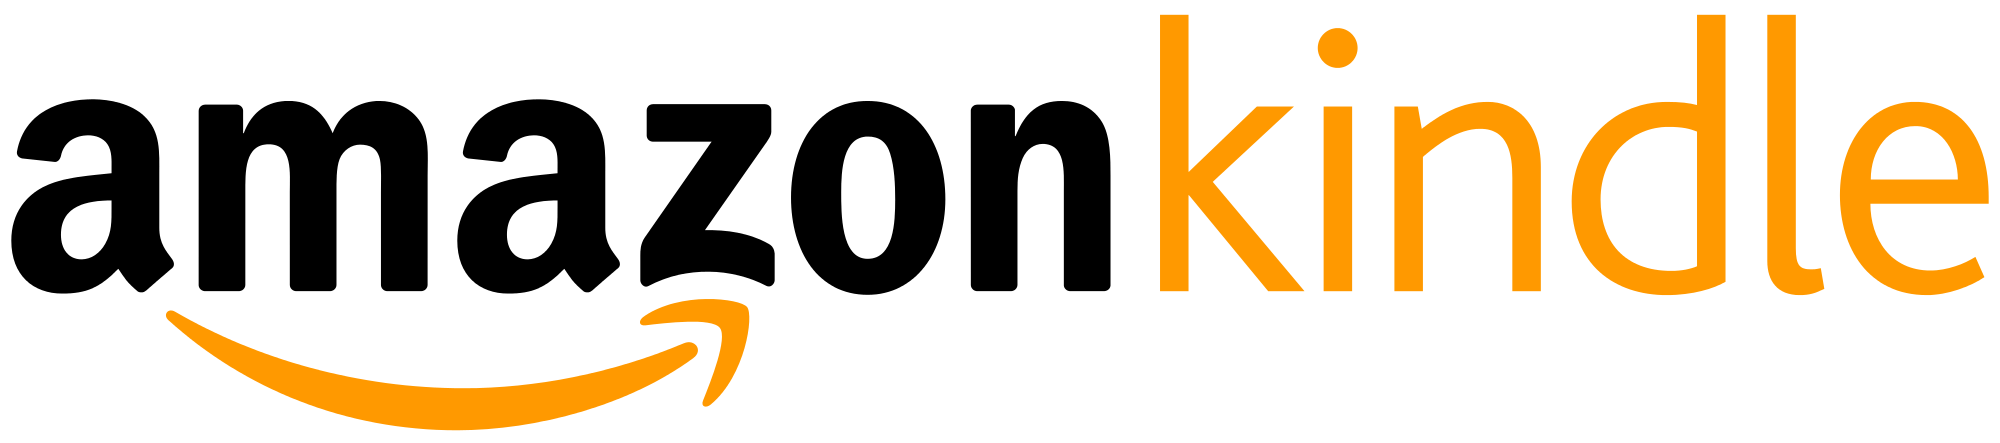 Amazon Kindle Logo - Amazon Kindle logo.svg